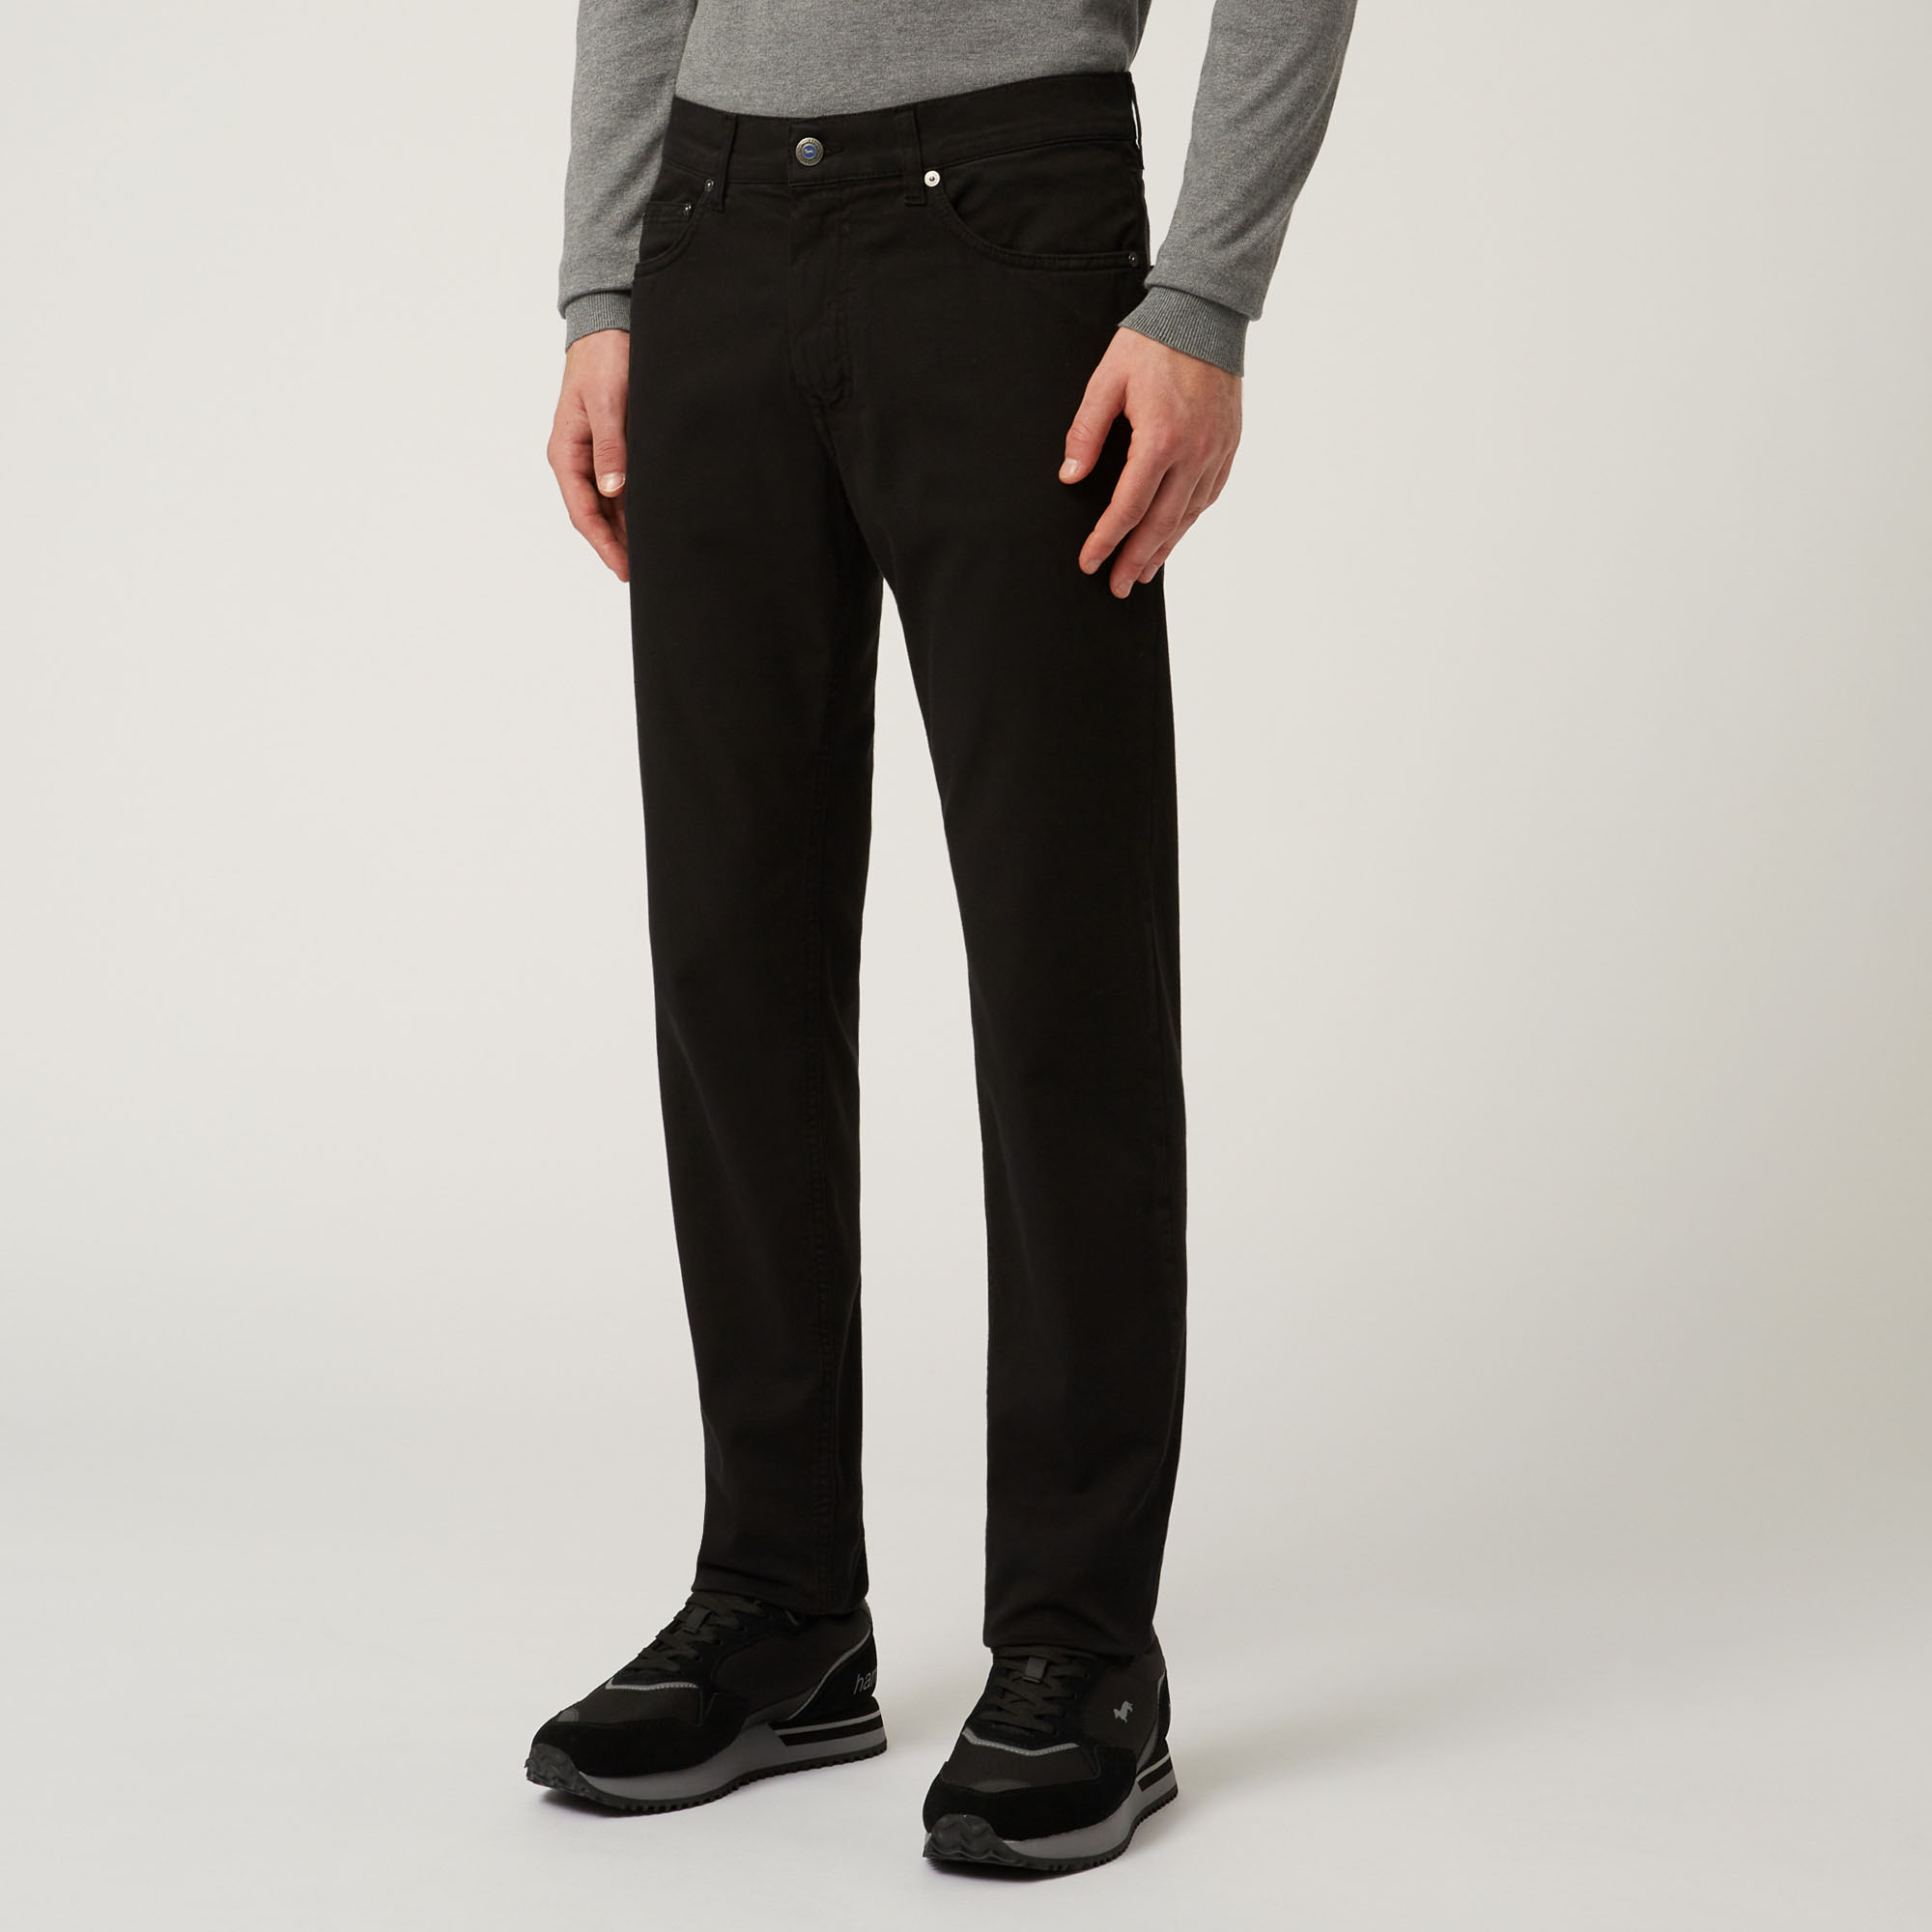 Pantalone Essentials in cotone tinta unita, Nero, large